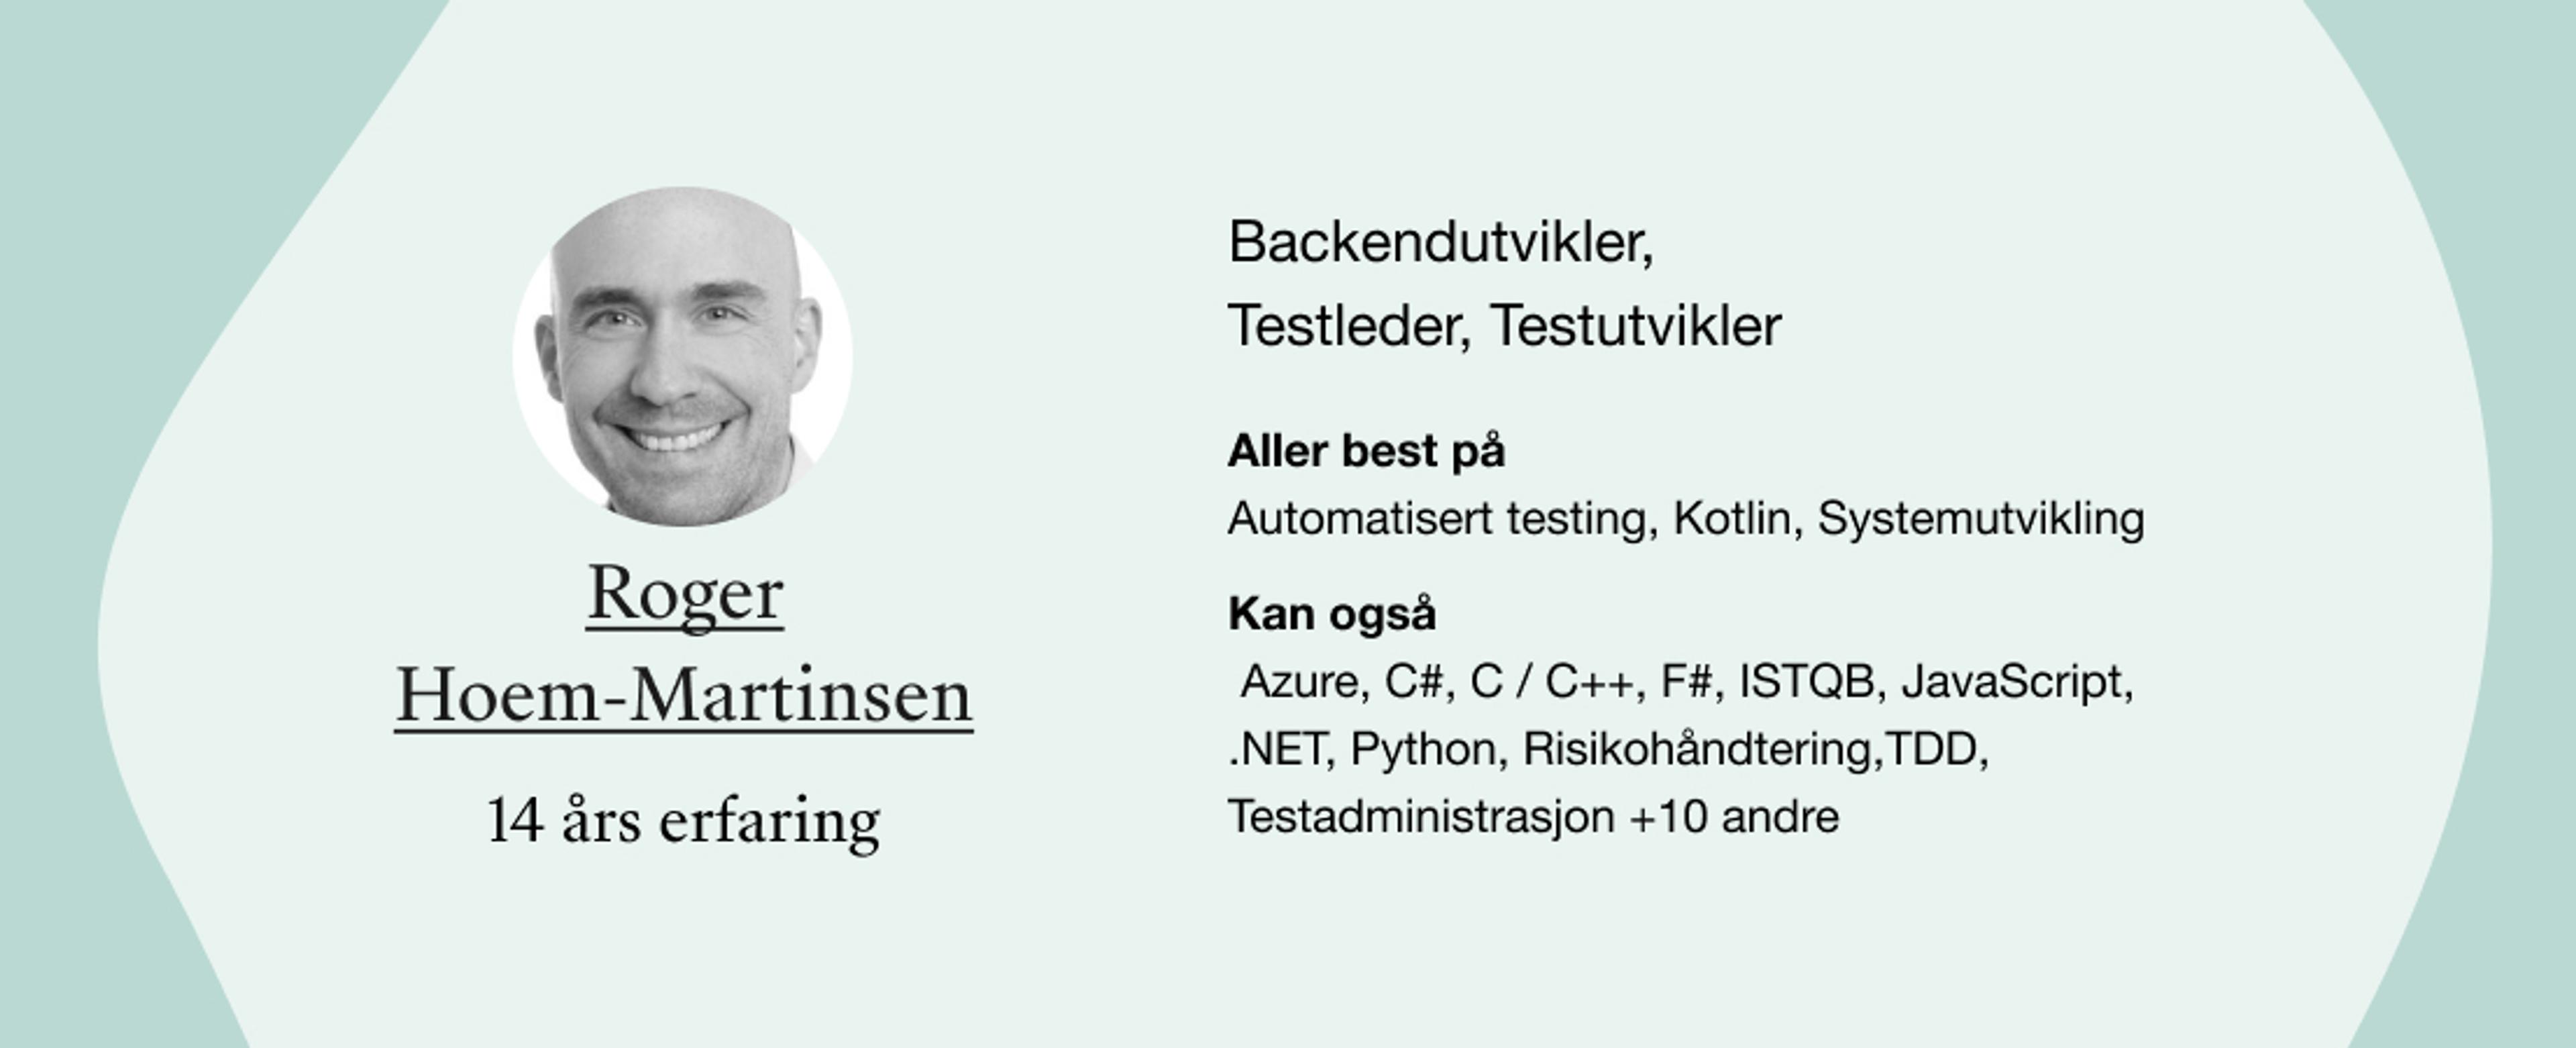 Roger Hoem-Martinsen. Roller: Backendutvikler,  Testleder, Testutvikler. Kompetanser: Automatisert testing, Kotlin, Systemutvikling, Azure, C#, C / C++, F#, ISTQB, JavaScript, .NET, Python, Risikohåndtering,TDD, Testadministrasjon +10 andre 